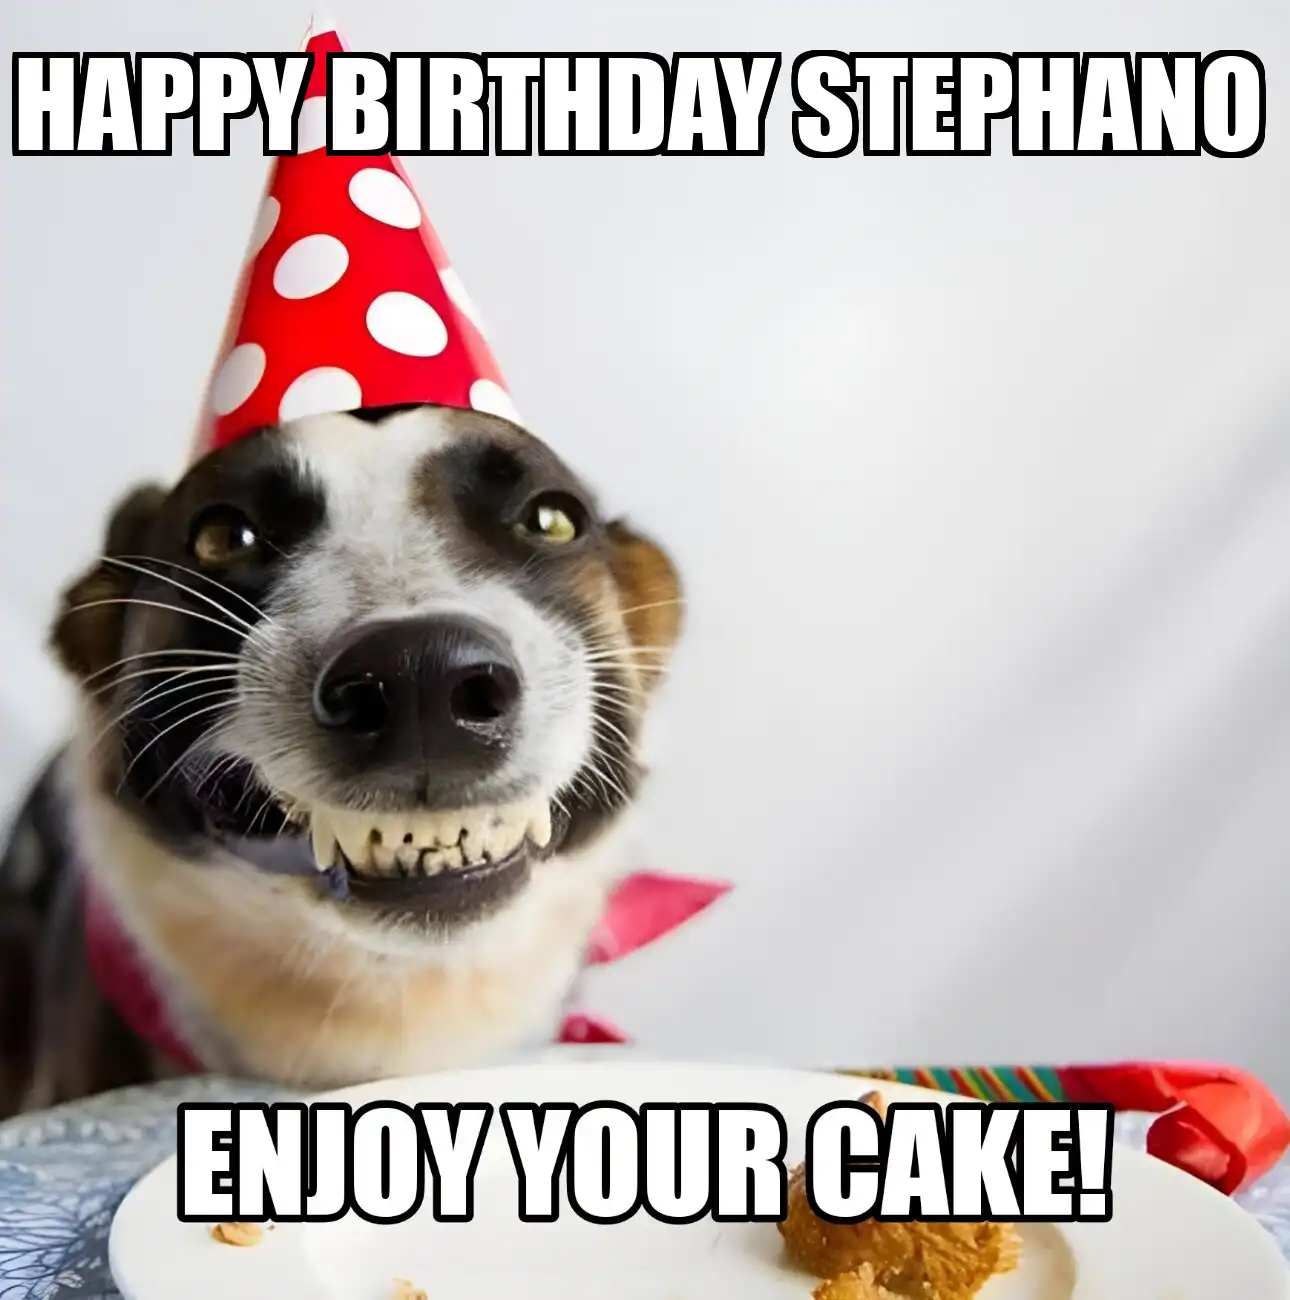 Happy Birthday Stephano Enjoy Your Cake Dog Meme